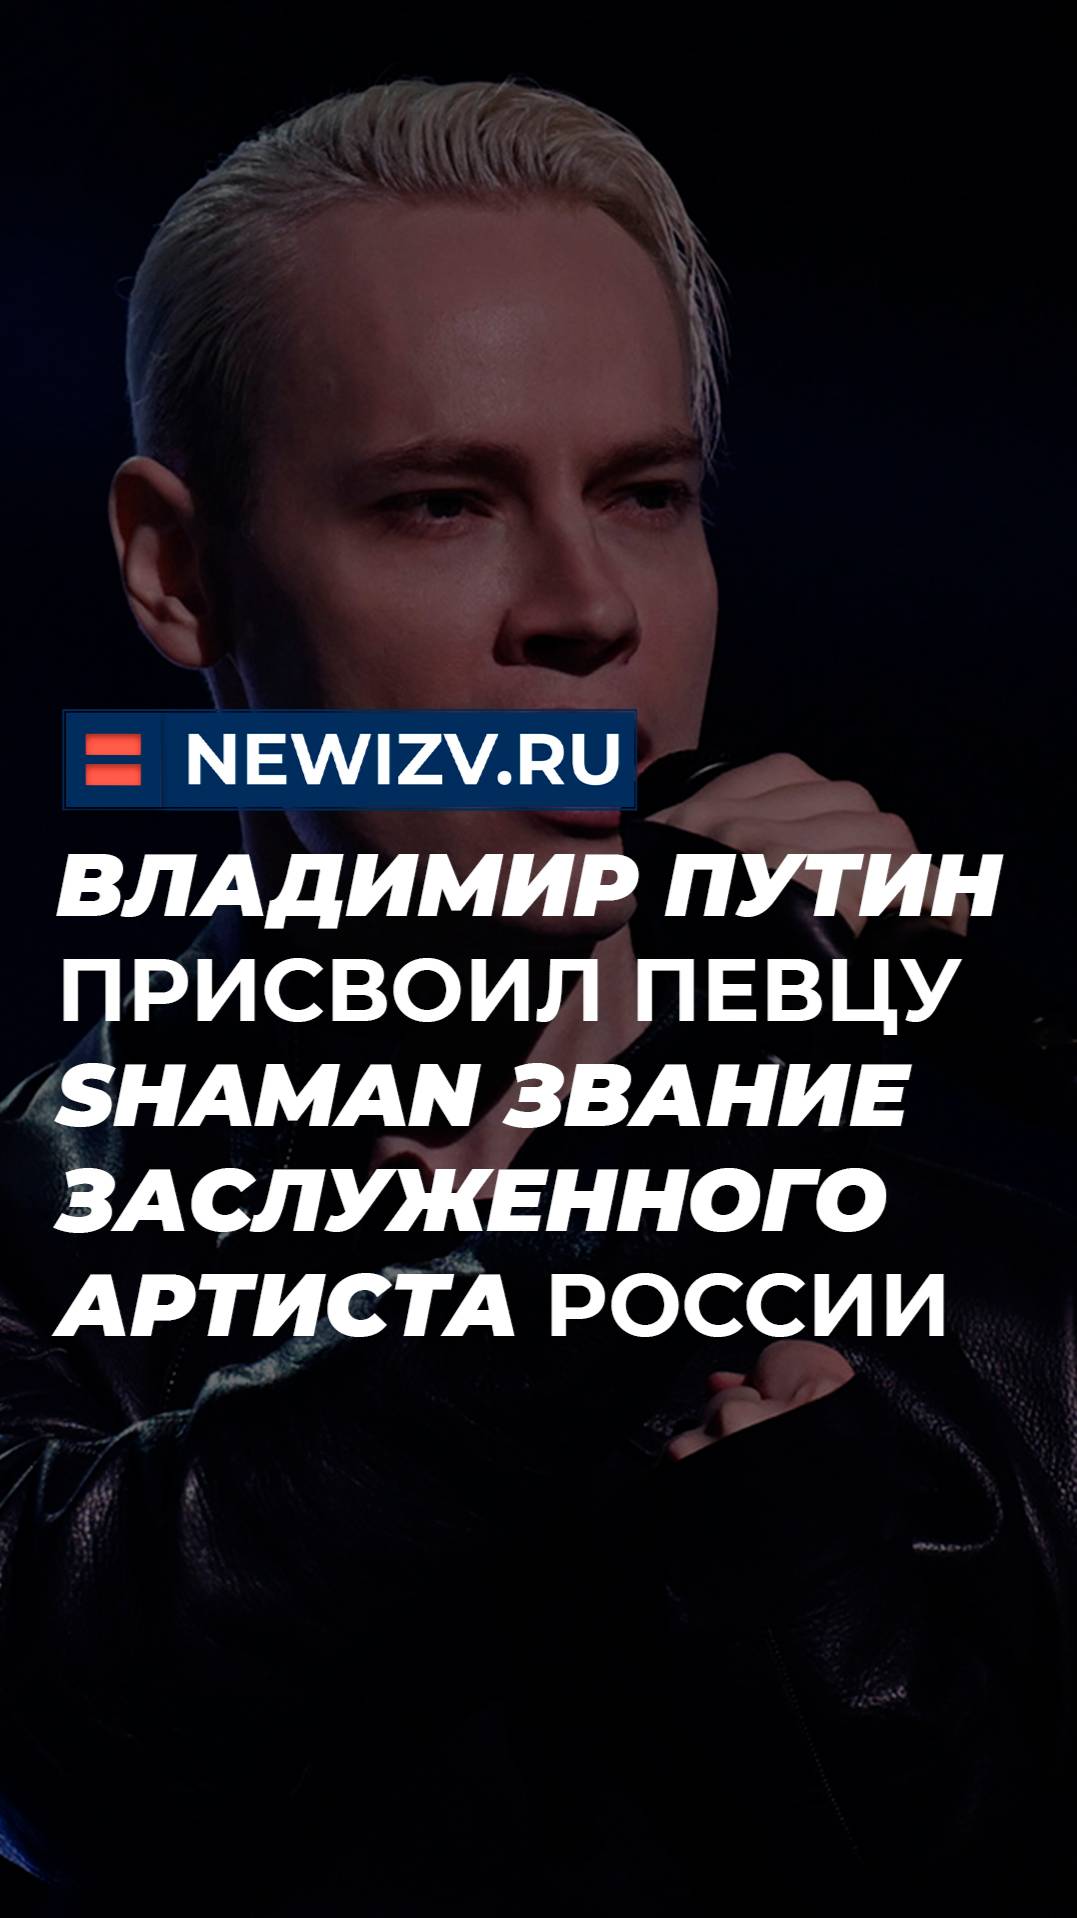 Владимир Путин присвоил певцу Shaman звание заслуженного артиста России